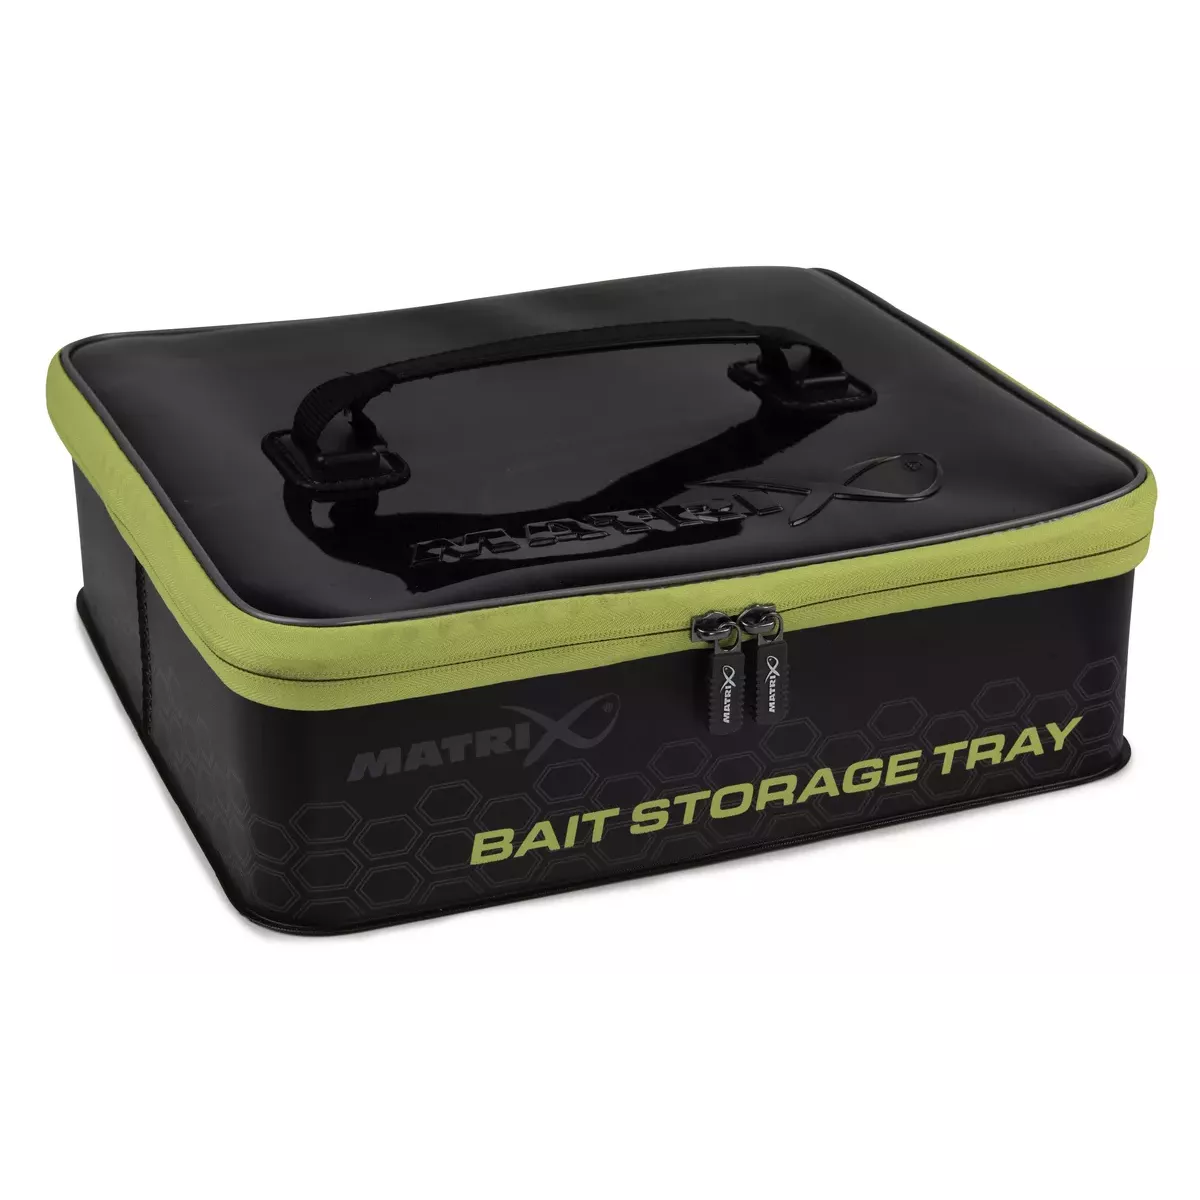 Organizer Matrix EVA Bait Storage Tray GLU171